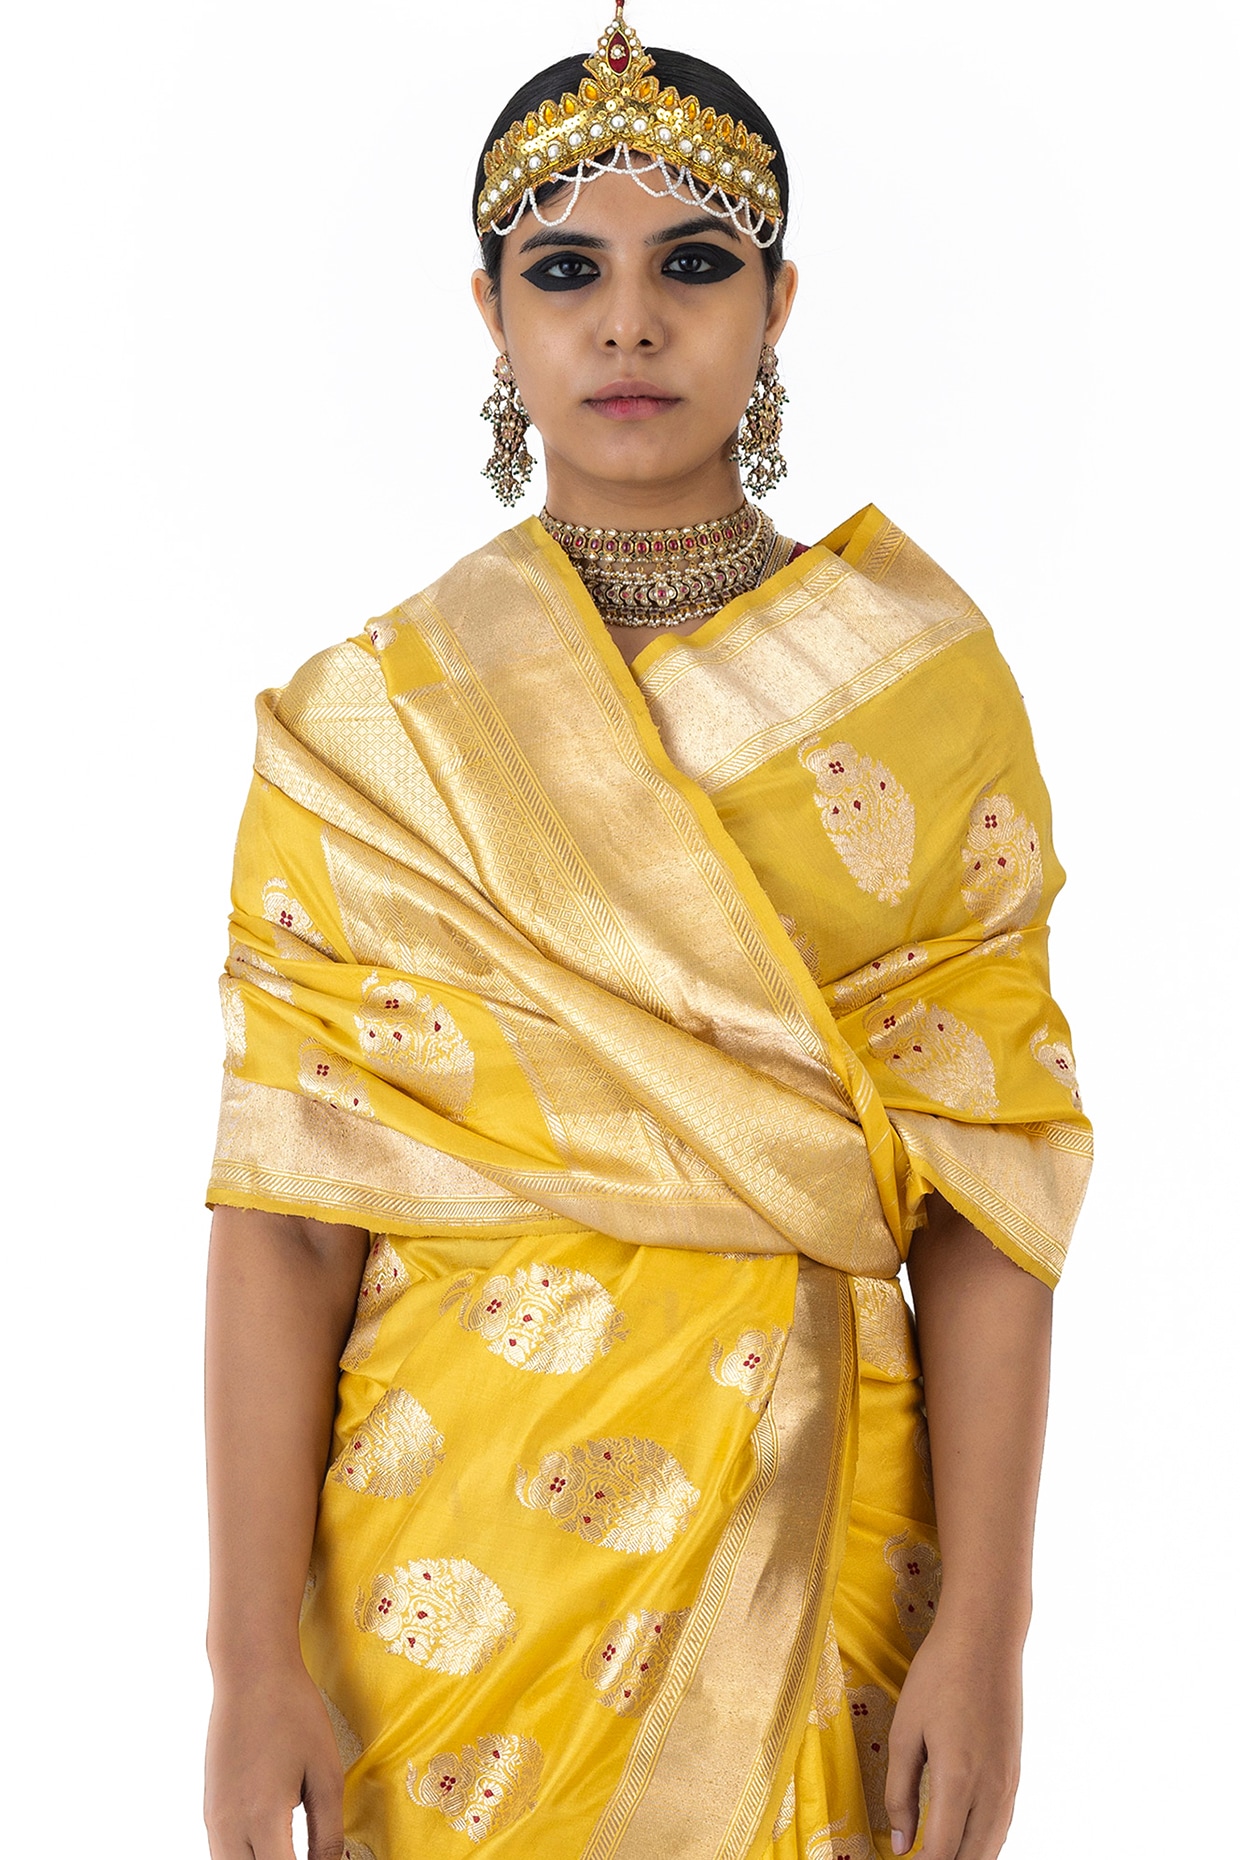 Zari weaving Banarasi Brocade Silk Saree, 6.3 m (with blouse piece) at Rs  1350 in Varanasi